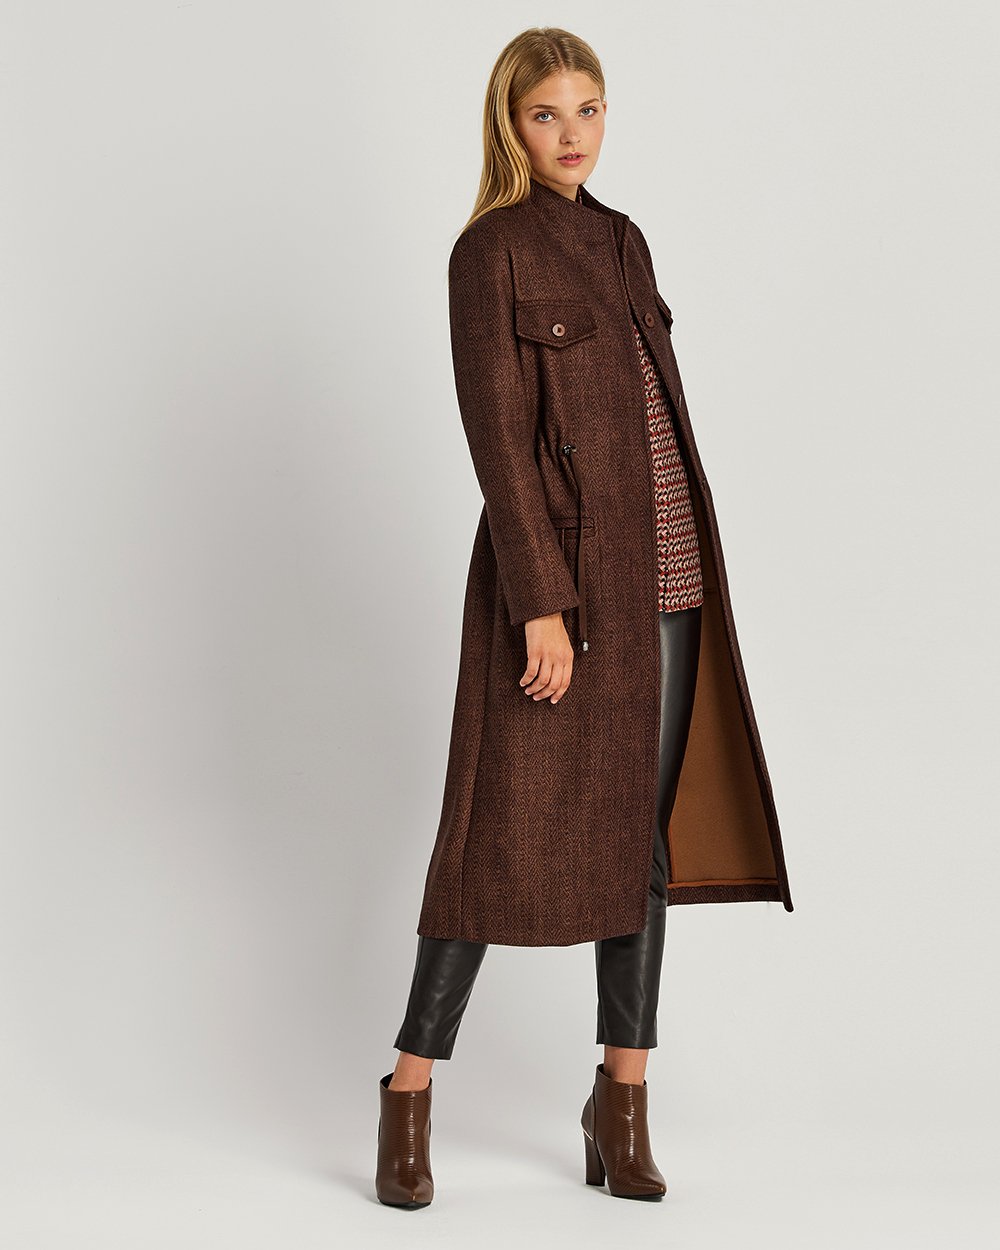 Παλτό με όρθιο γιακά και τσέπες μακρύ